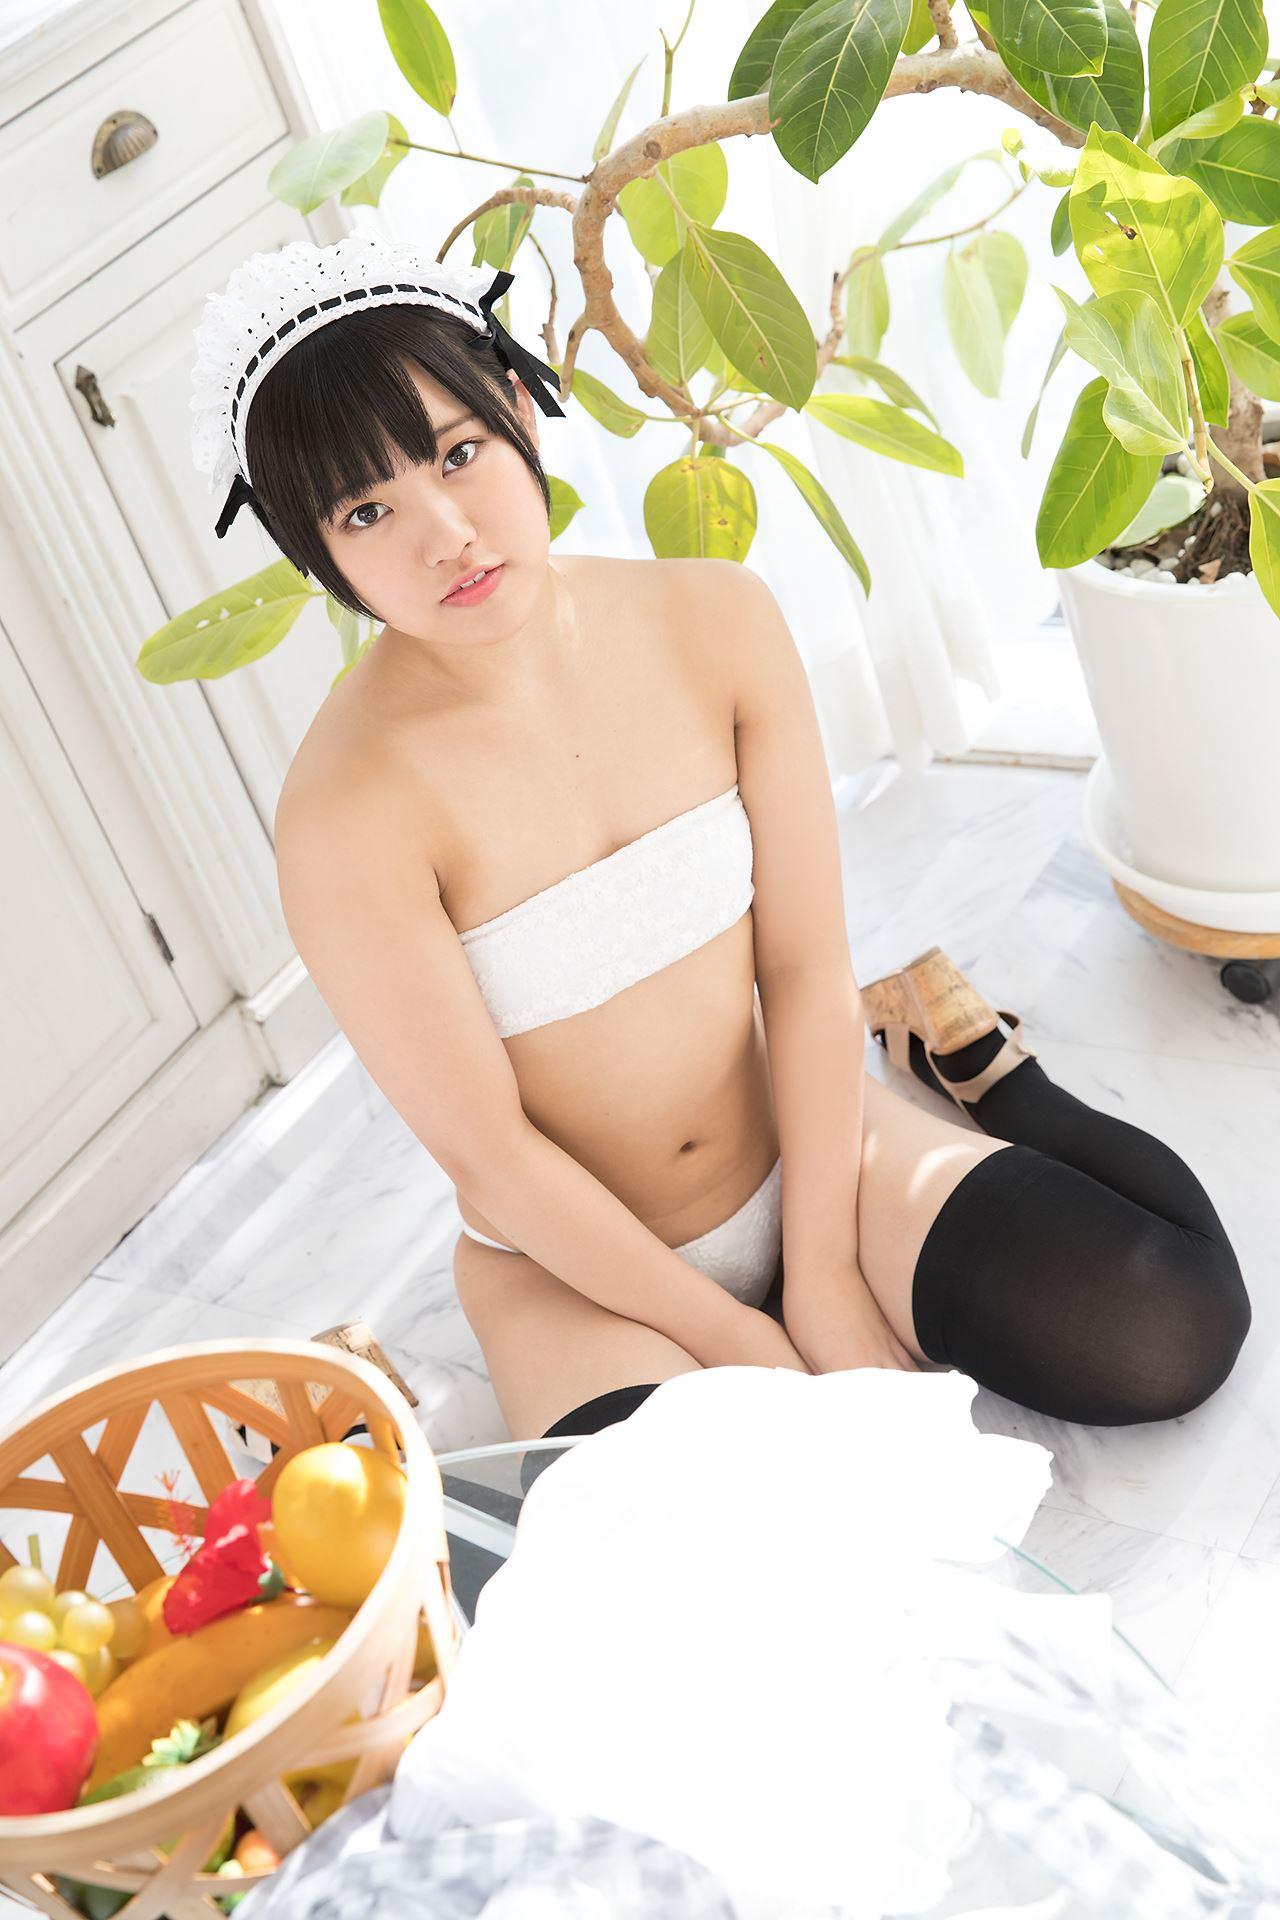 Minisuka.TV 2019.07.11 Anju Kouzuki 香月りお Secret Gallery (STAGE2) 11.1 - 19.jpg